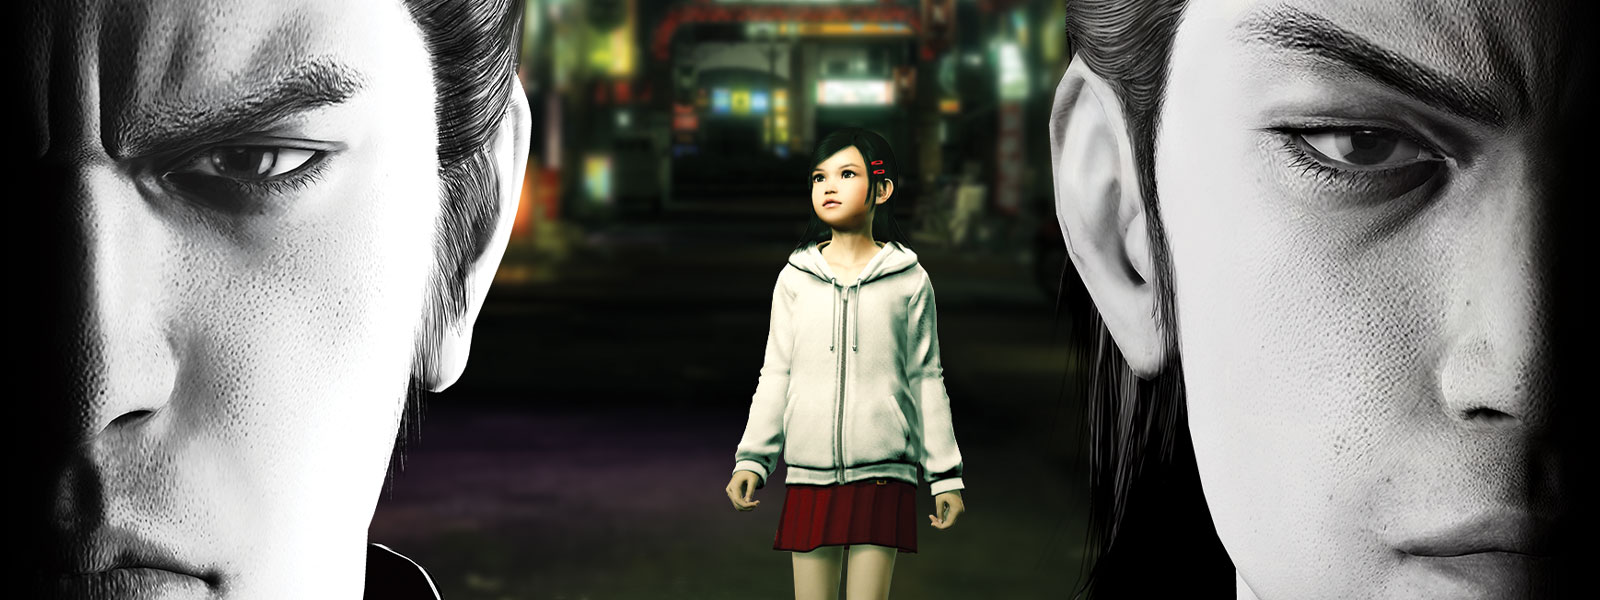 Dvě postavy Yakuzy zírají těžce dopředu, zatímco ve městě za nimi stojí malá holčička.